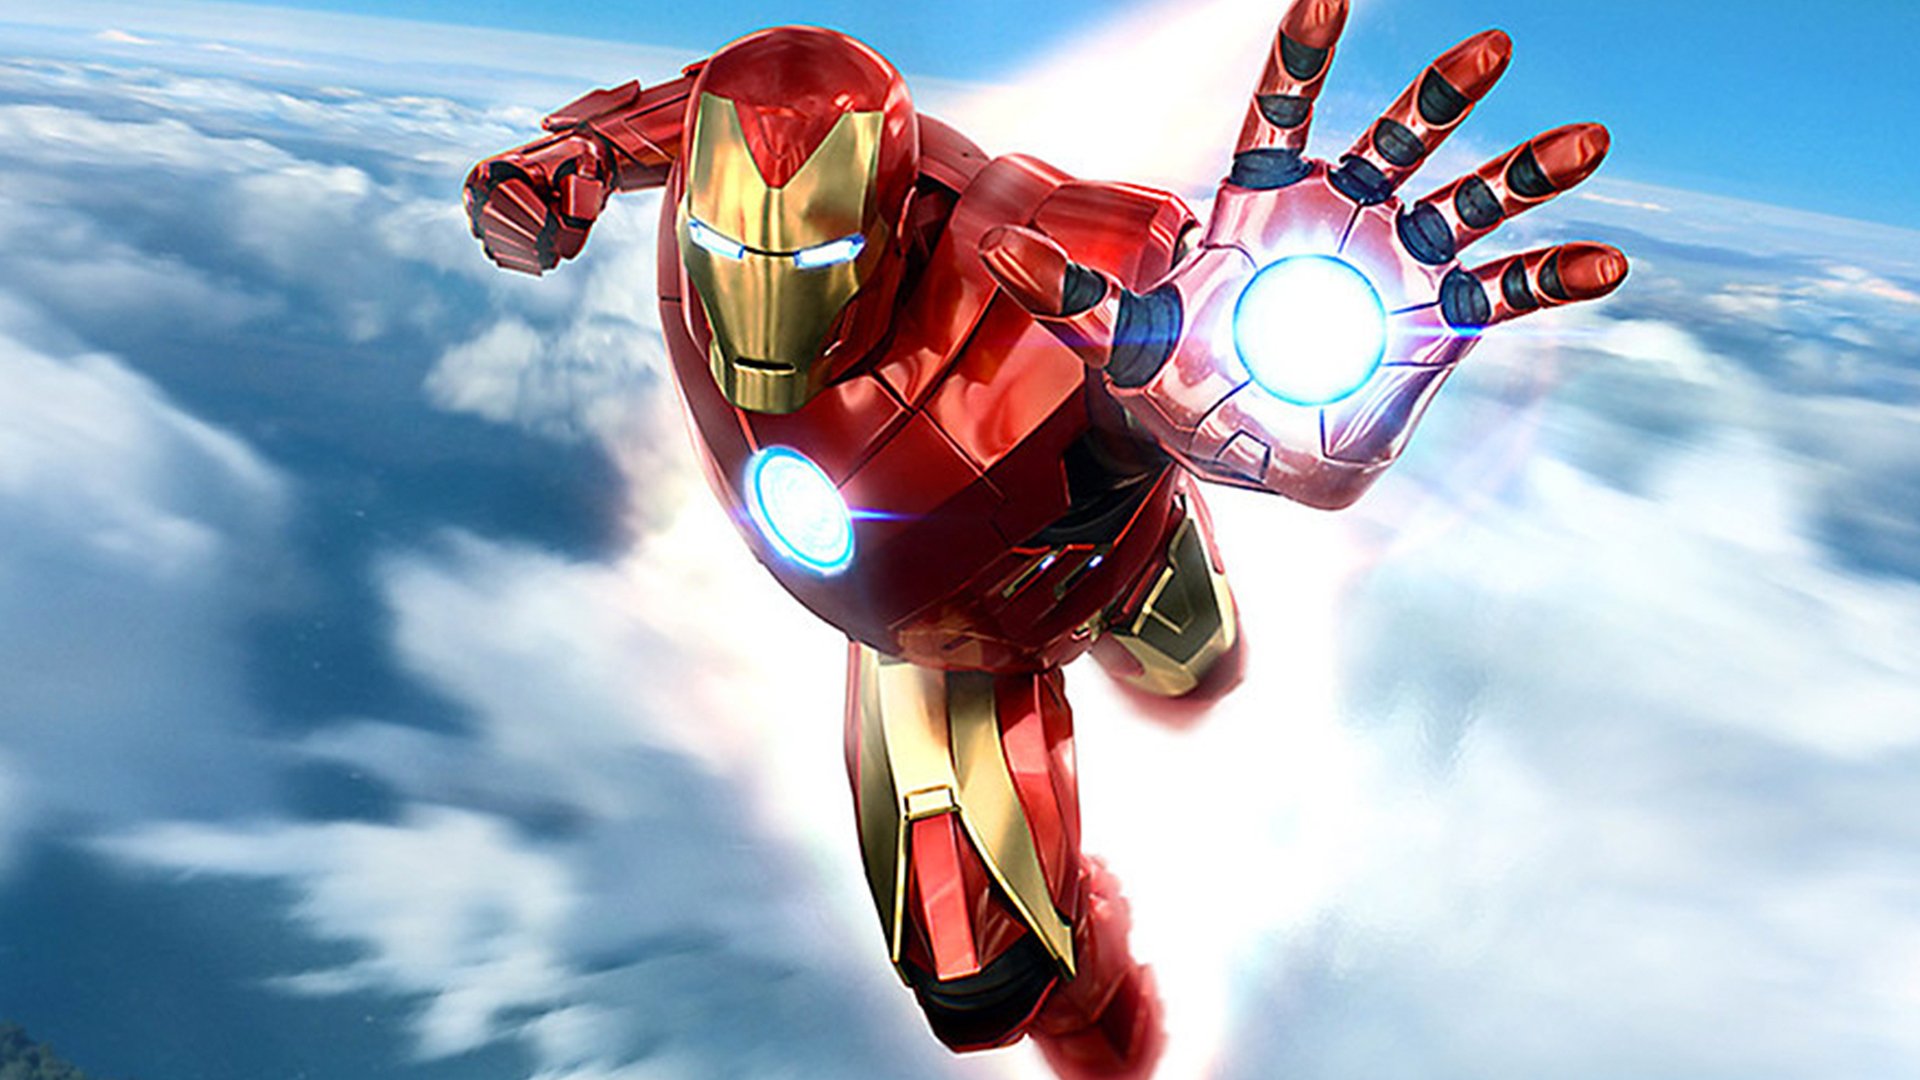 Marvel Avengers anunció un cómic exclusivo de Iron Man